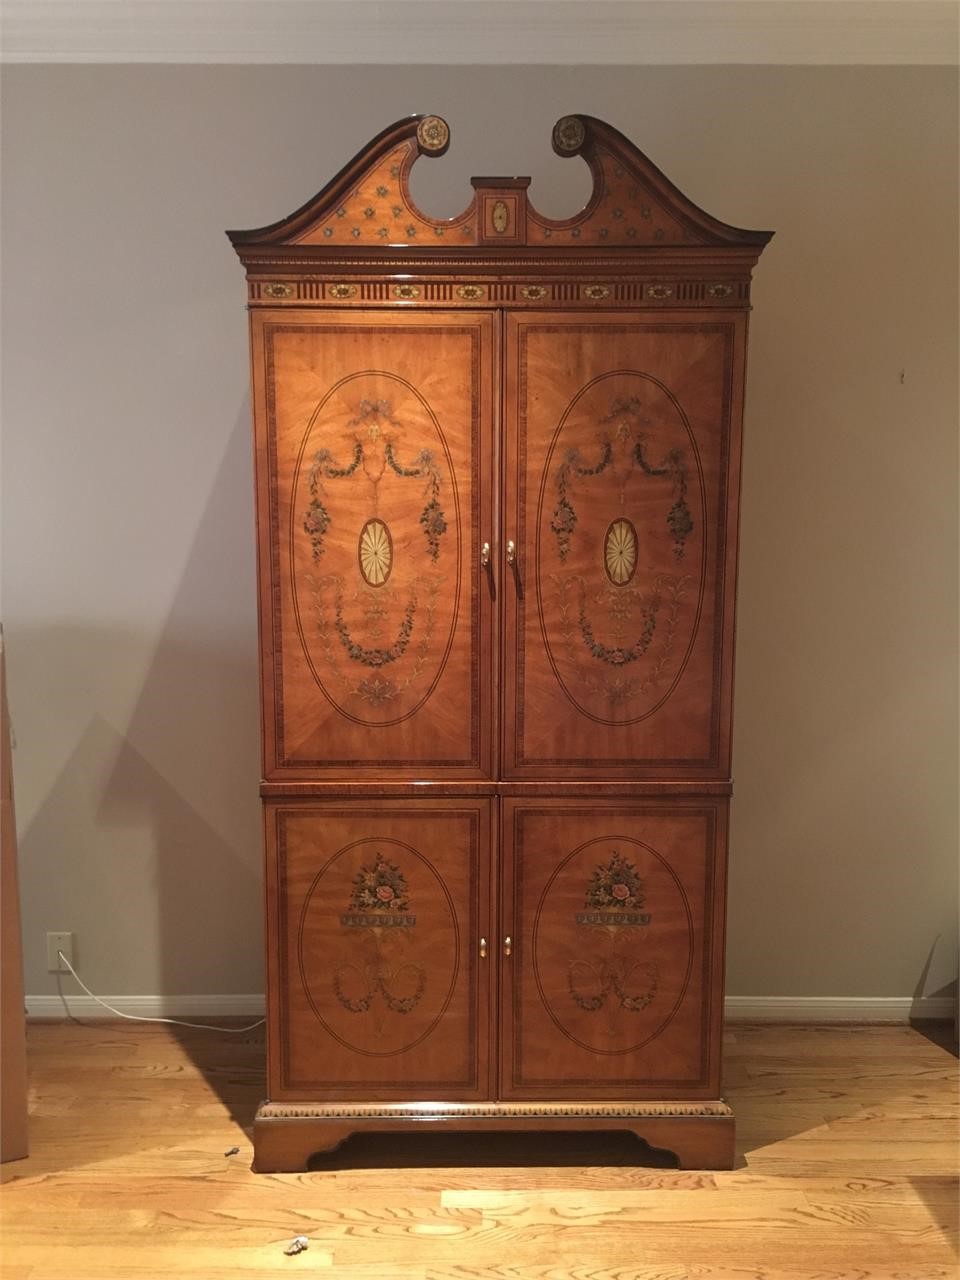 Vintage solid wood illuminated cabinet